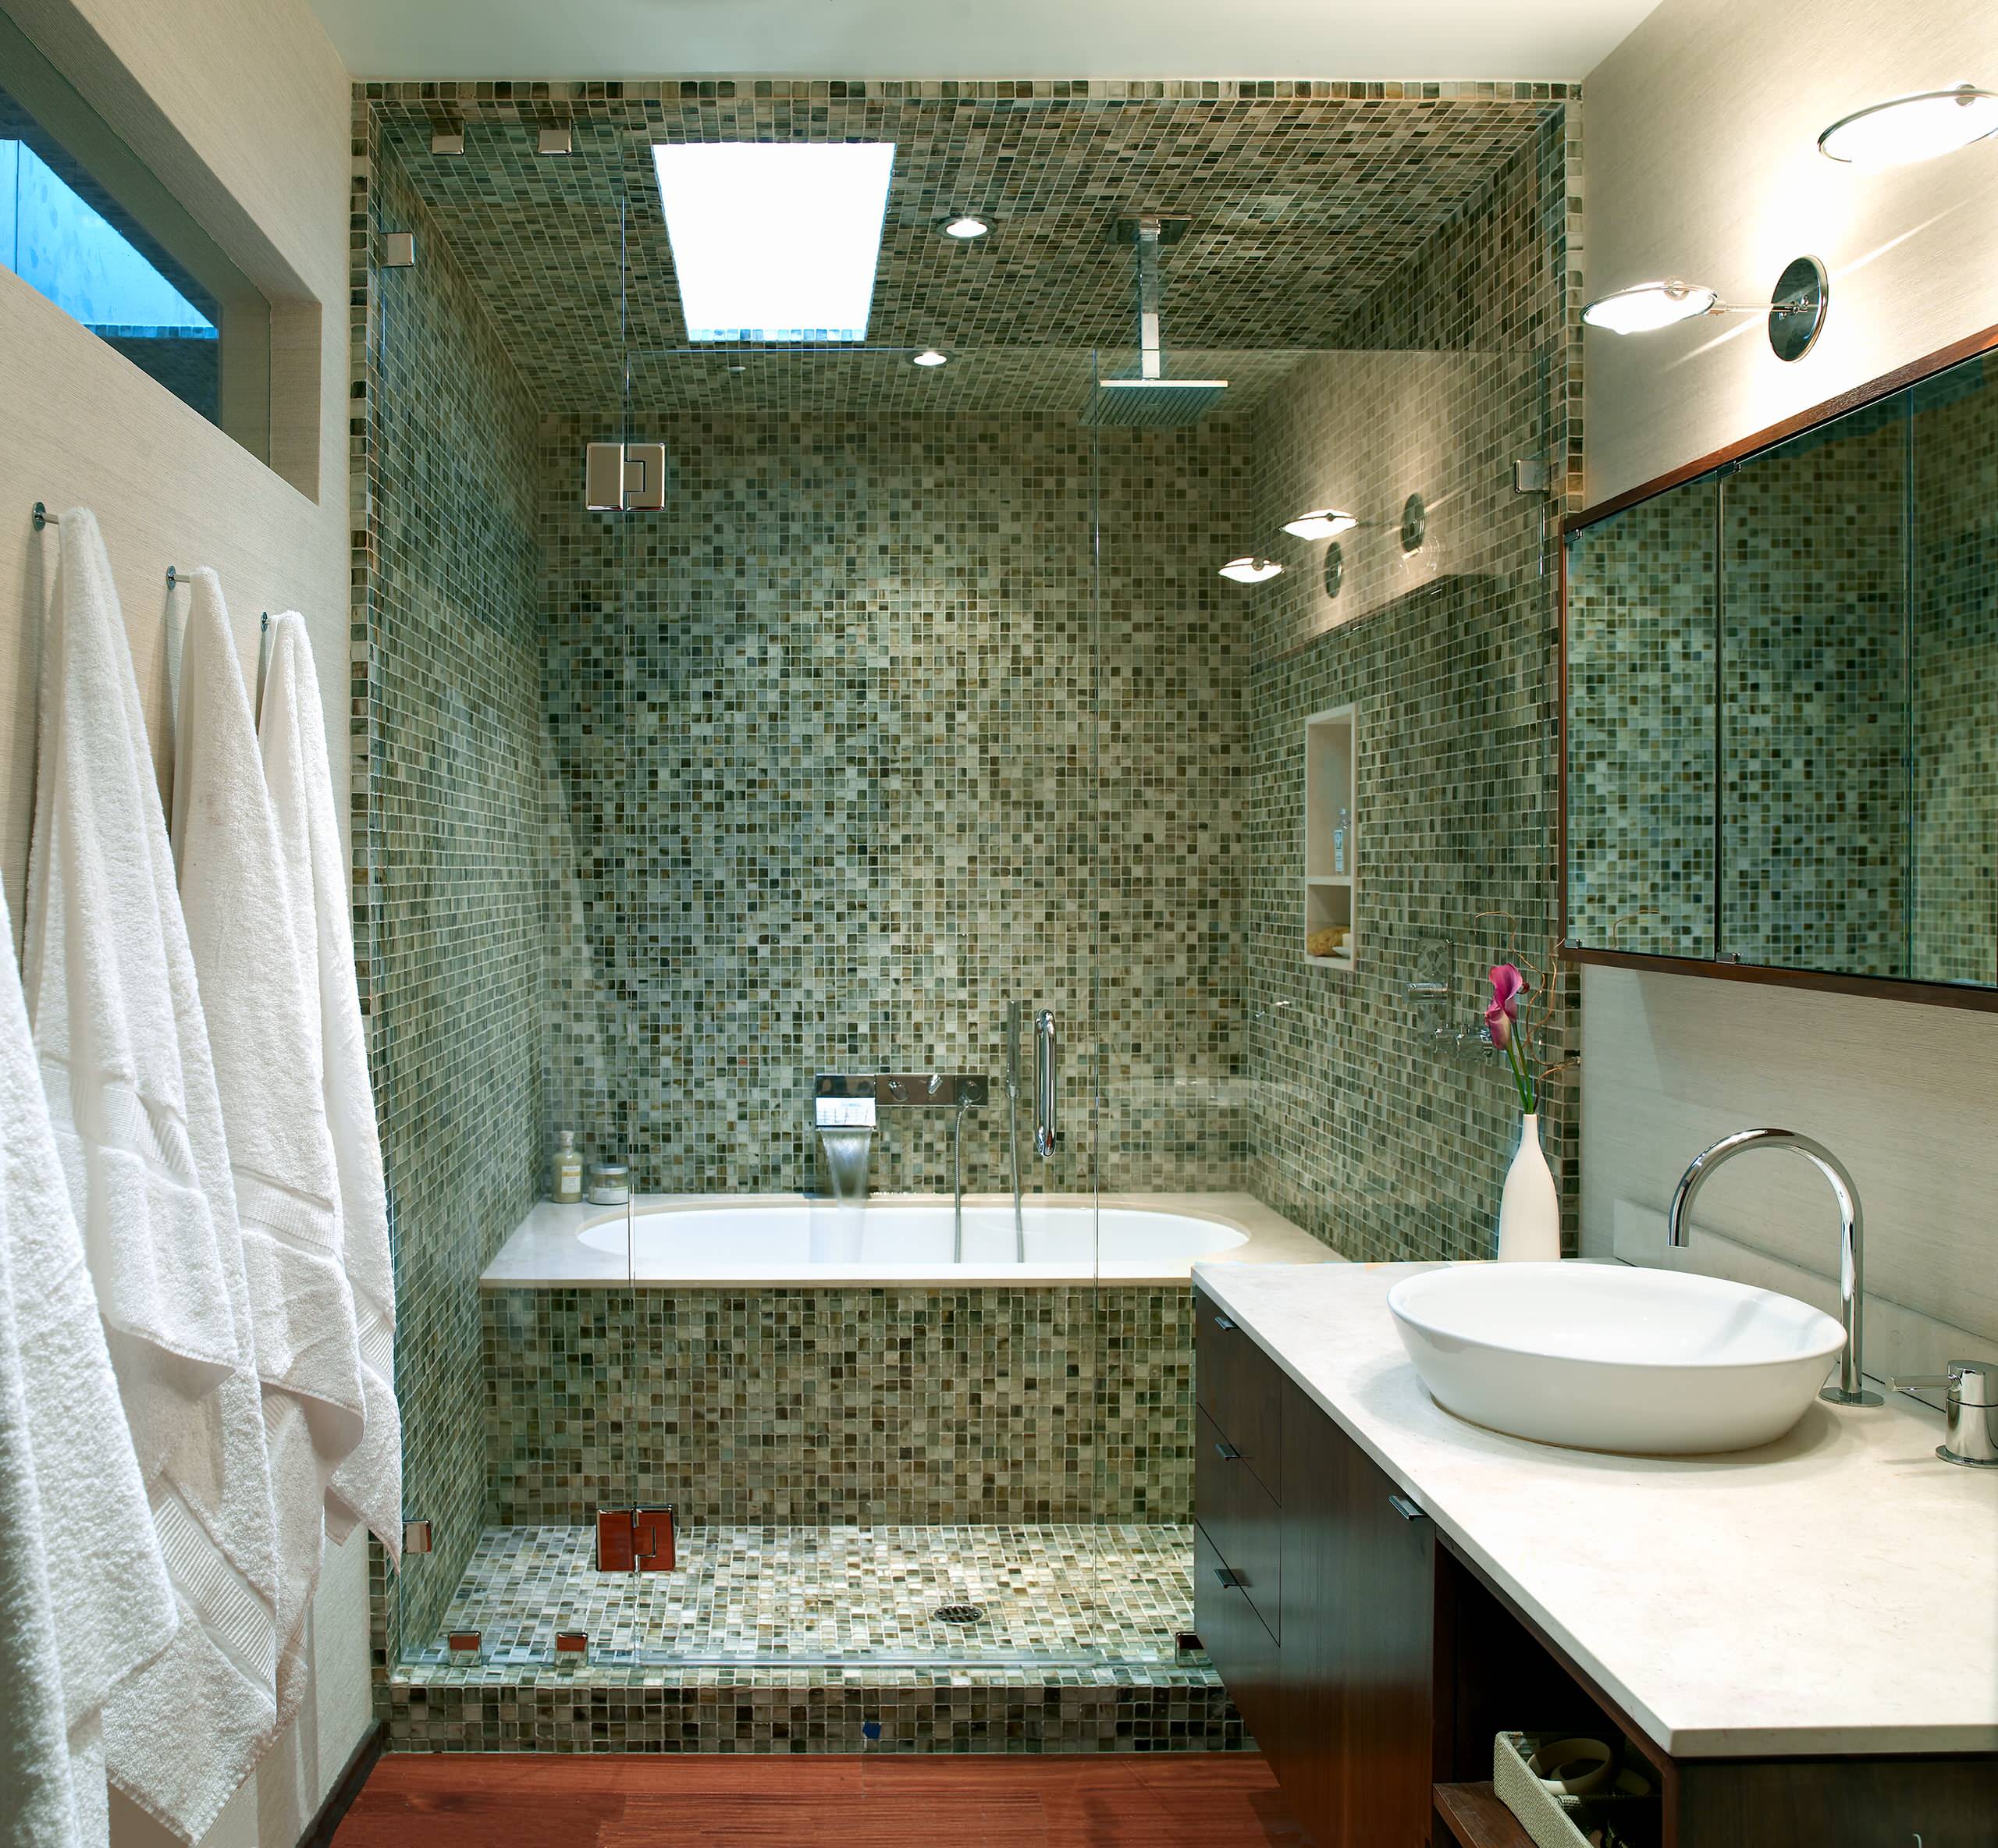 Ванной комната как красиво сделать. Отделка ванной комнаты мозаикой. Мозаика в маленькой ванной комнате. Ванная отделанная мозаикой. Ванная комната отделанная мозаикой.